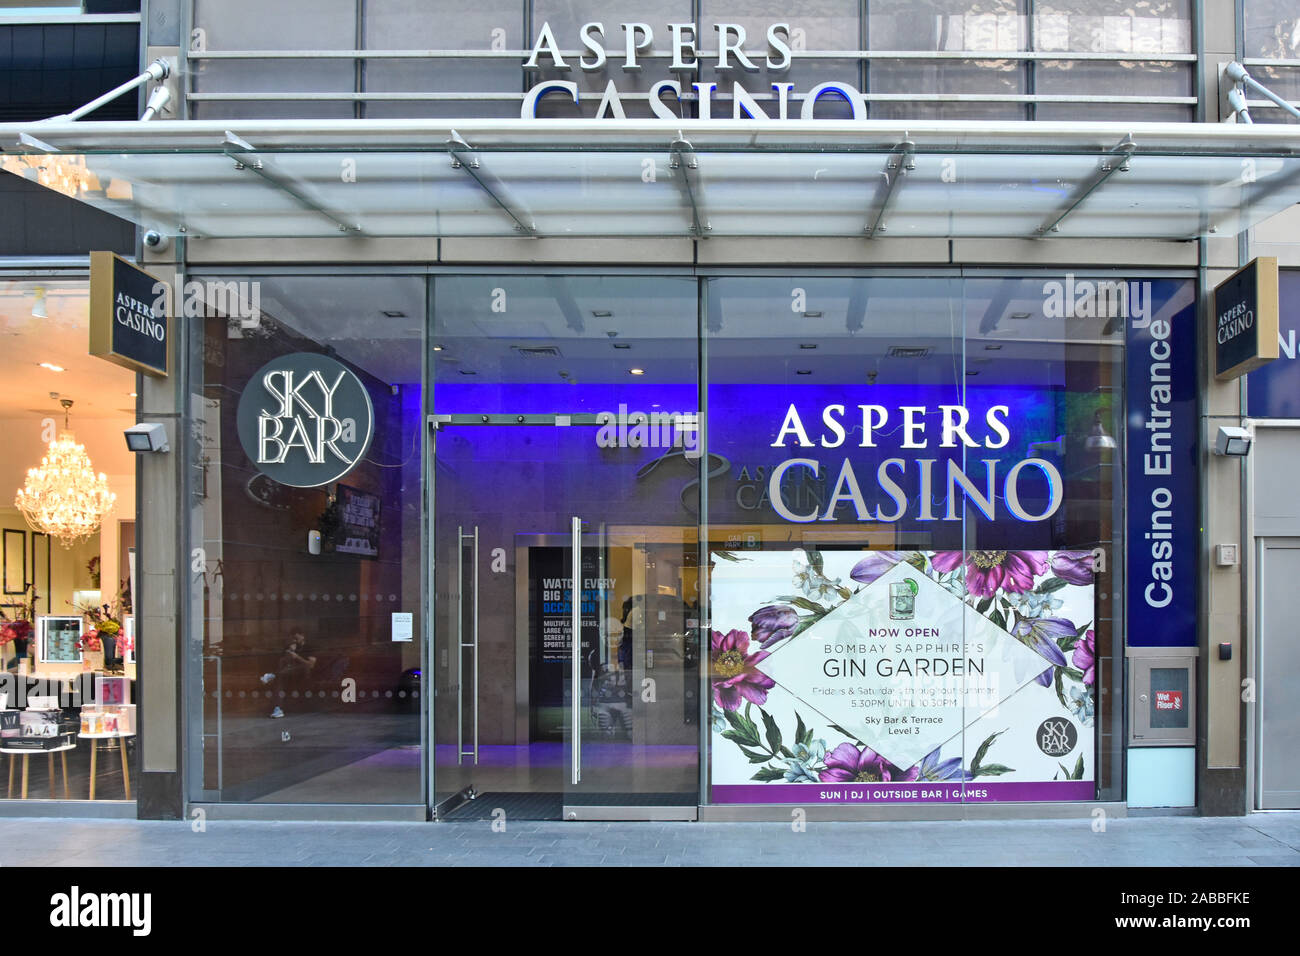 Ingresso al 24/7 Aspers casino offre il gioco d'azzardo giochi da tavolo slot machines ristoranti bar al Westfield Stratford City di Londra centro shopping mall REGNO UNITO Foto Stock